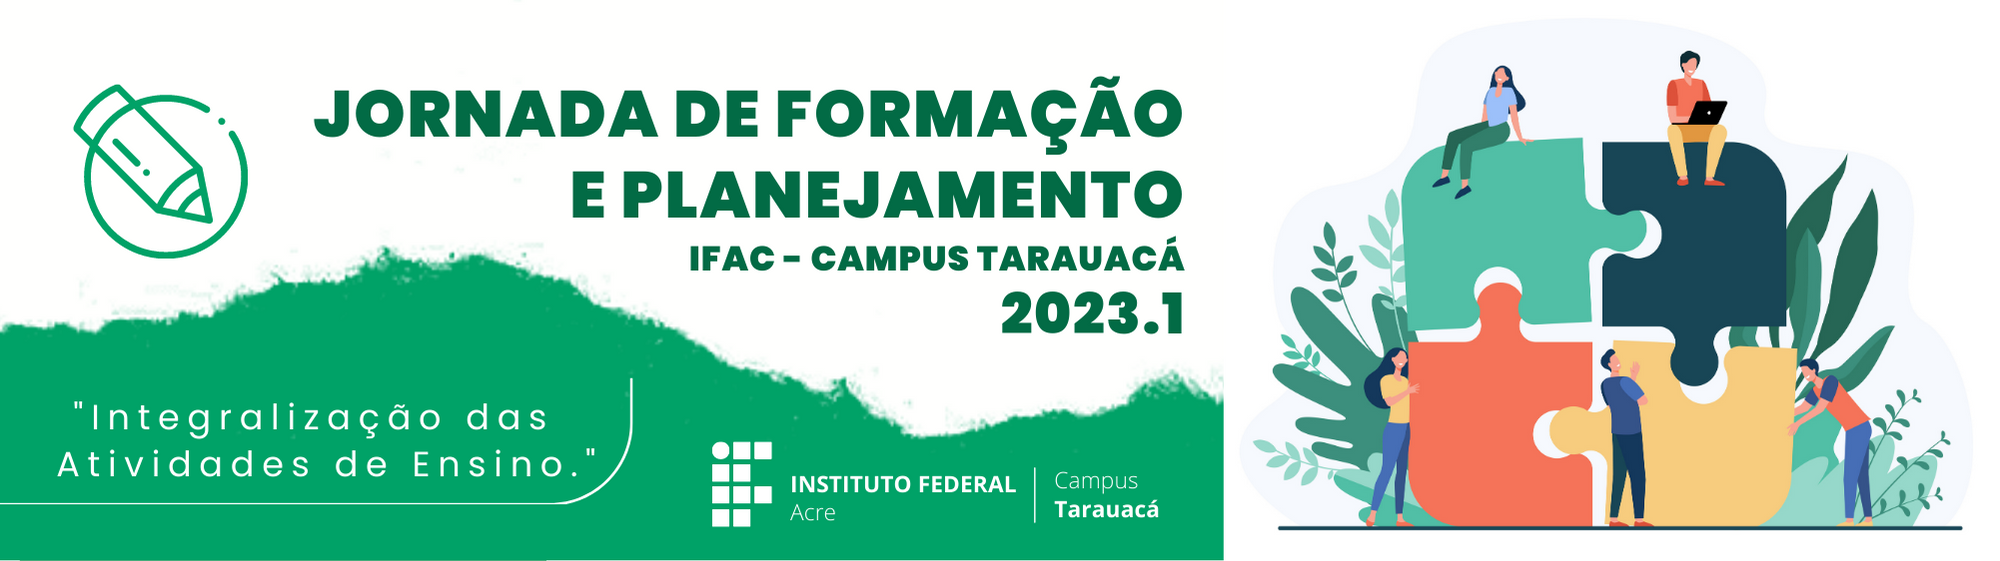 banner do JORNADA DE FORMAÇÃO E PLANEJAMENTO IFAC/CAMPUS TARAUACÁ - 2023.1